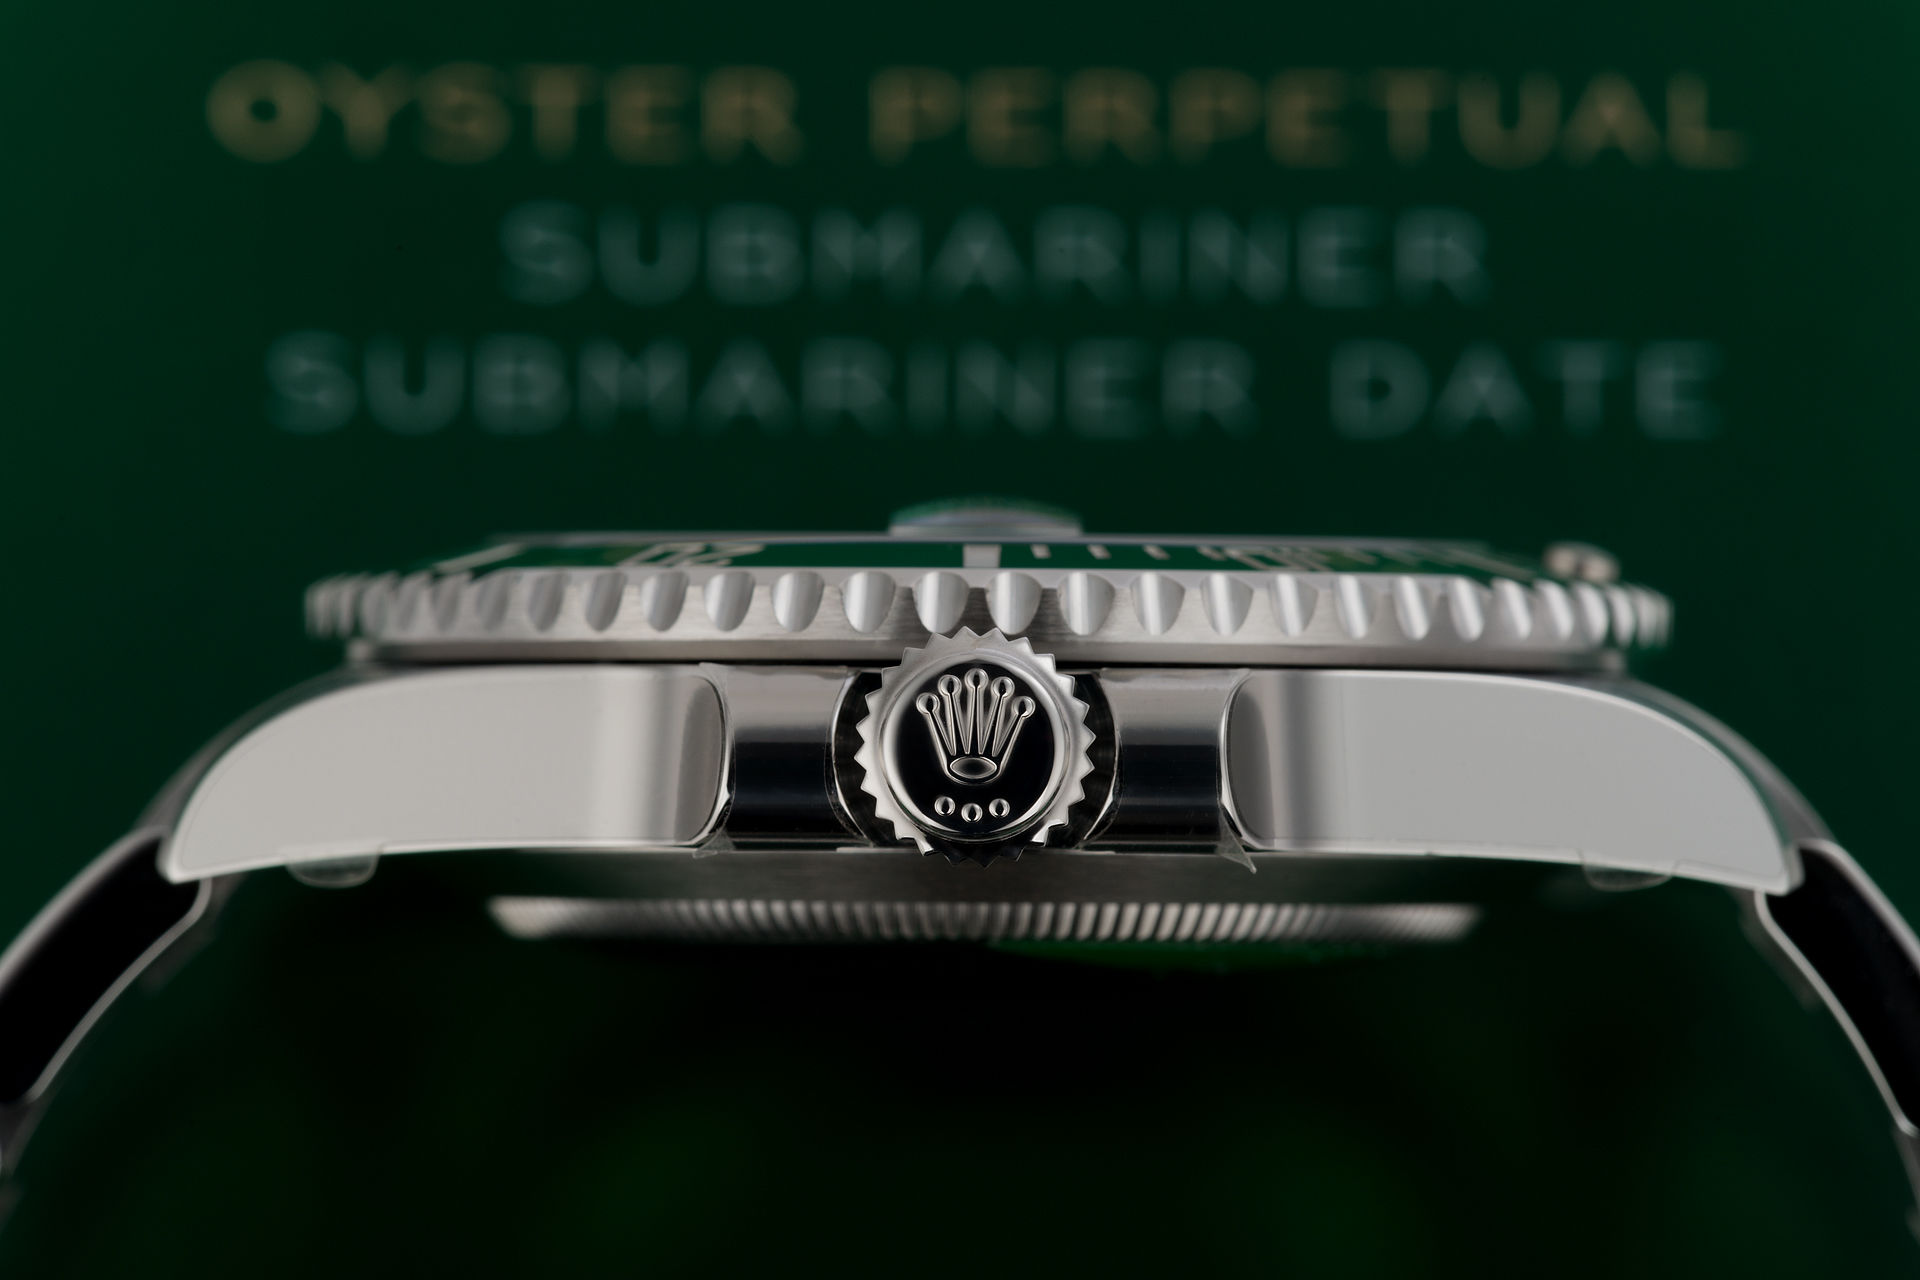 ref 116610LV | Brand New 5 Year Warranty | Rolex Submariner Date